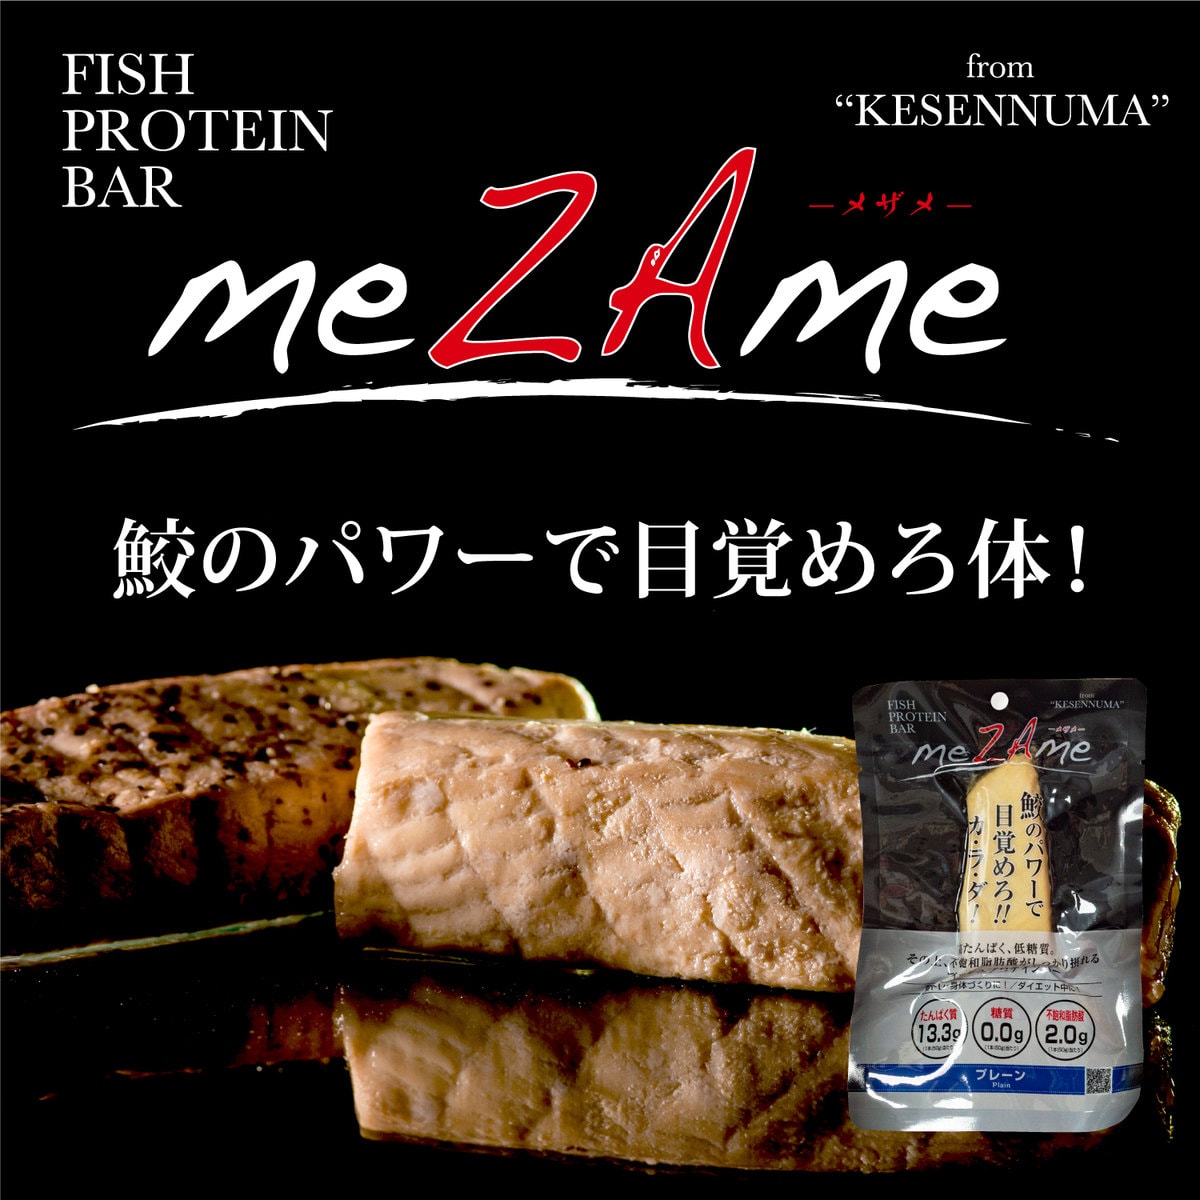 宮城県住みます芸人のけせんぬまペイ！さんがプロデュースしている「FISH PROTEIN BAR meZAme-メザメ-」の広告ビジュアル。